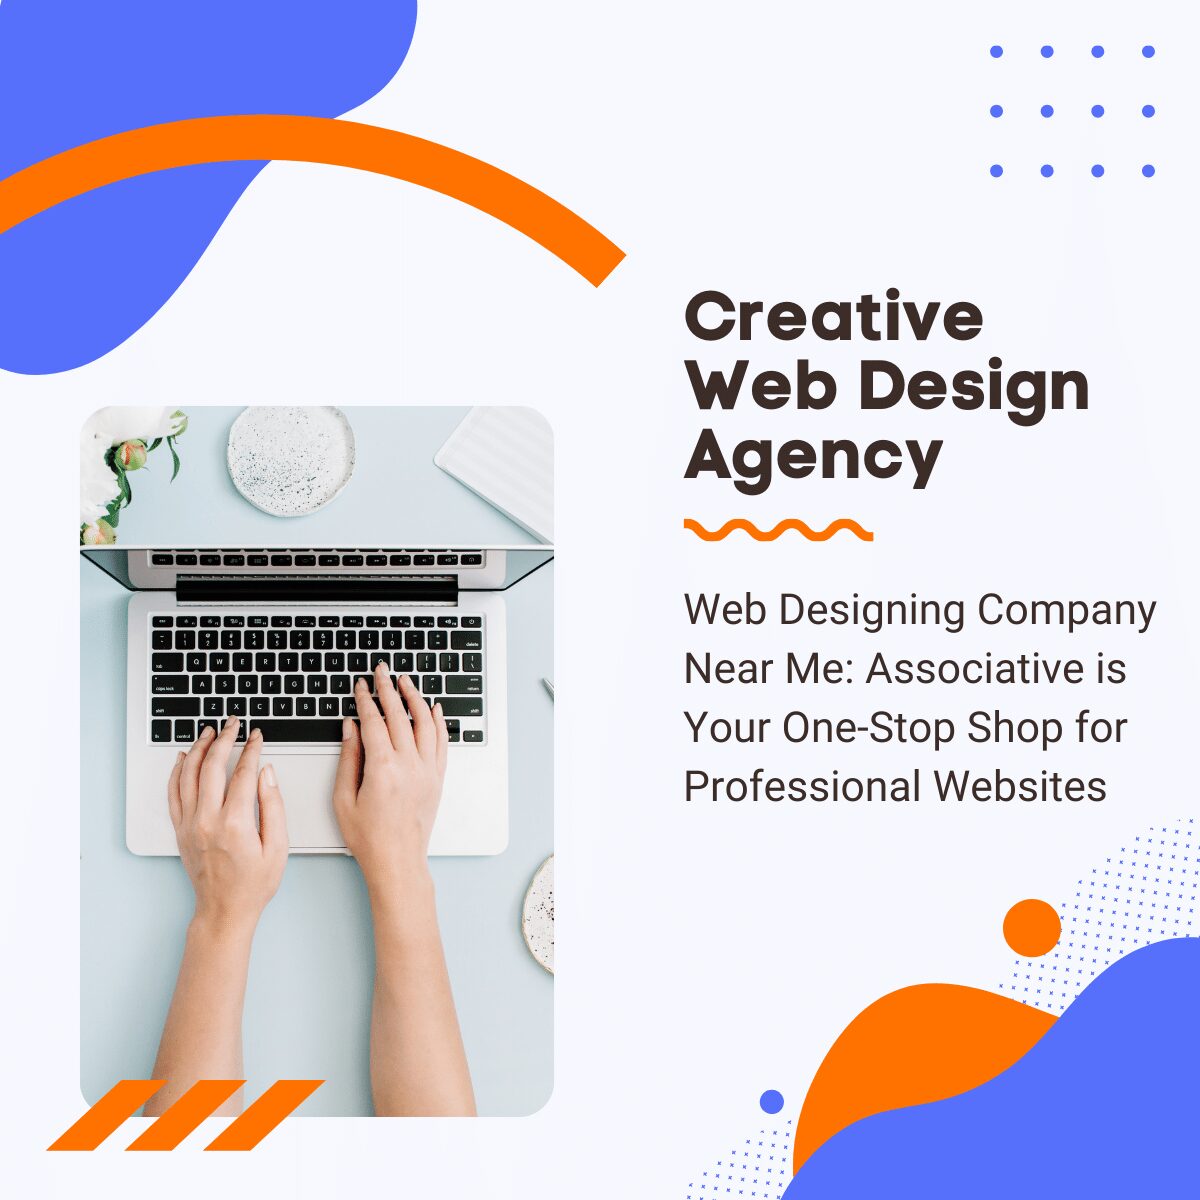 Web Designing Company Near Me: Associative is Your One-Stop Shop for Professional Websites पुणे में बेस्ट वेबसाइट डिजाइन चाहिए? एसोसिएटिव, आपका भरोसेमंद साथी!